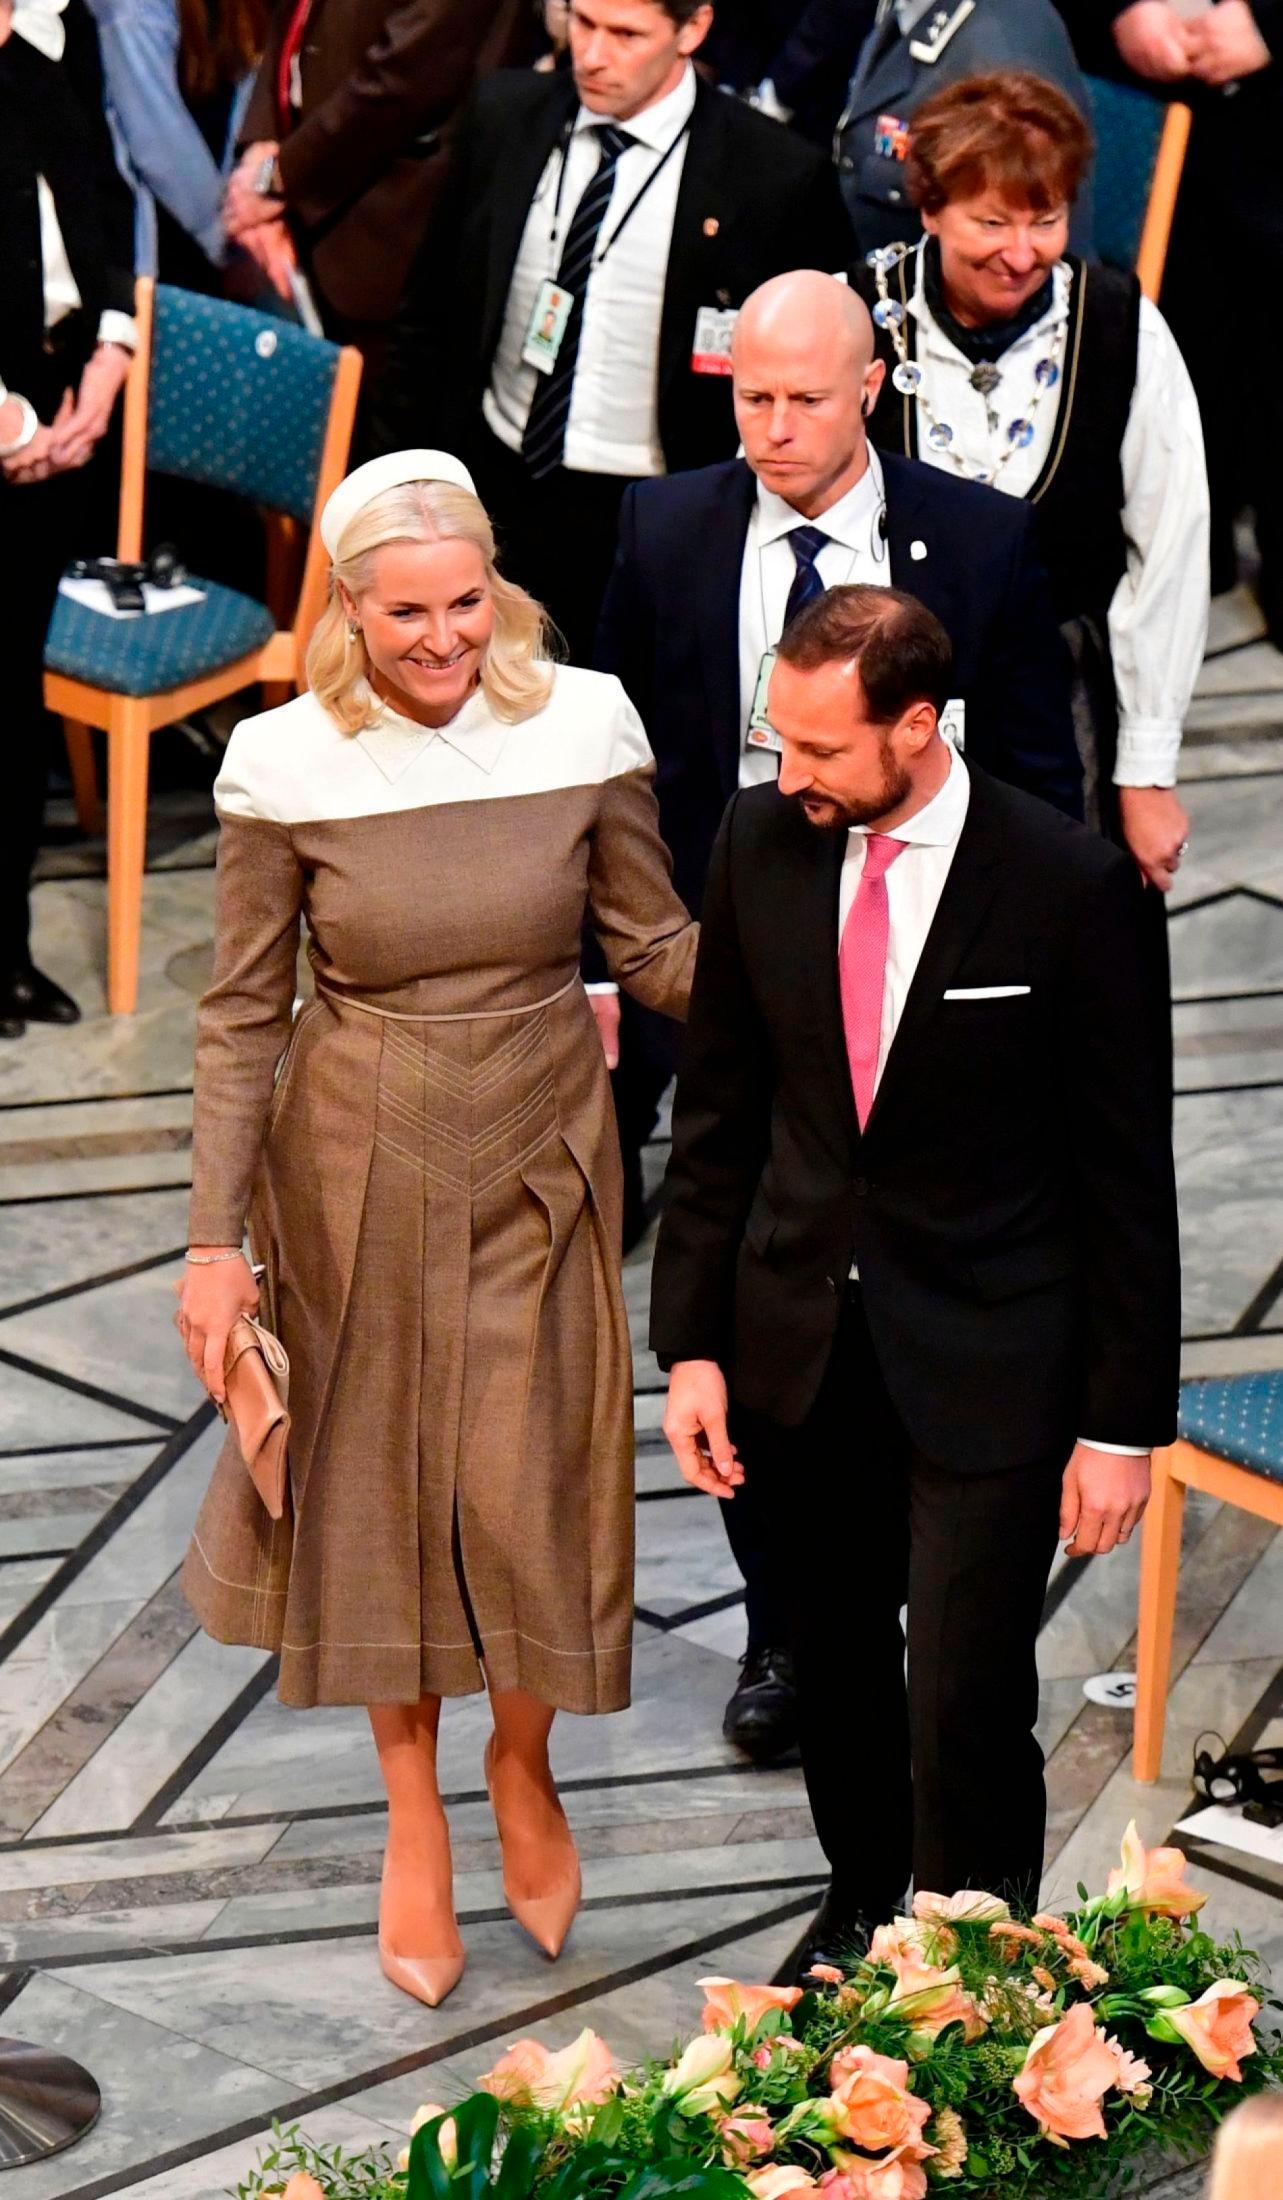 RETT FRA CATWALKEN: Mette-Marit brukte denne trendy kjolen fra Fendi under utdelingen av Nobelprisen i 2018. Kort tid tidligere hadde Gigi Hadid brukt den på catwalken. Foto: AFP.